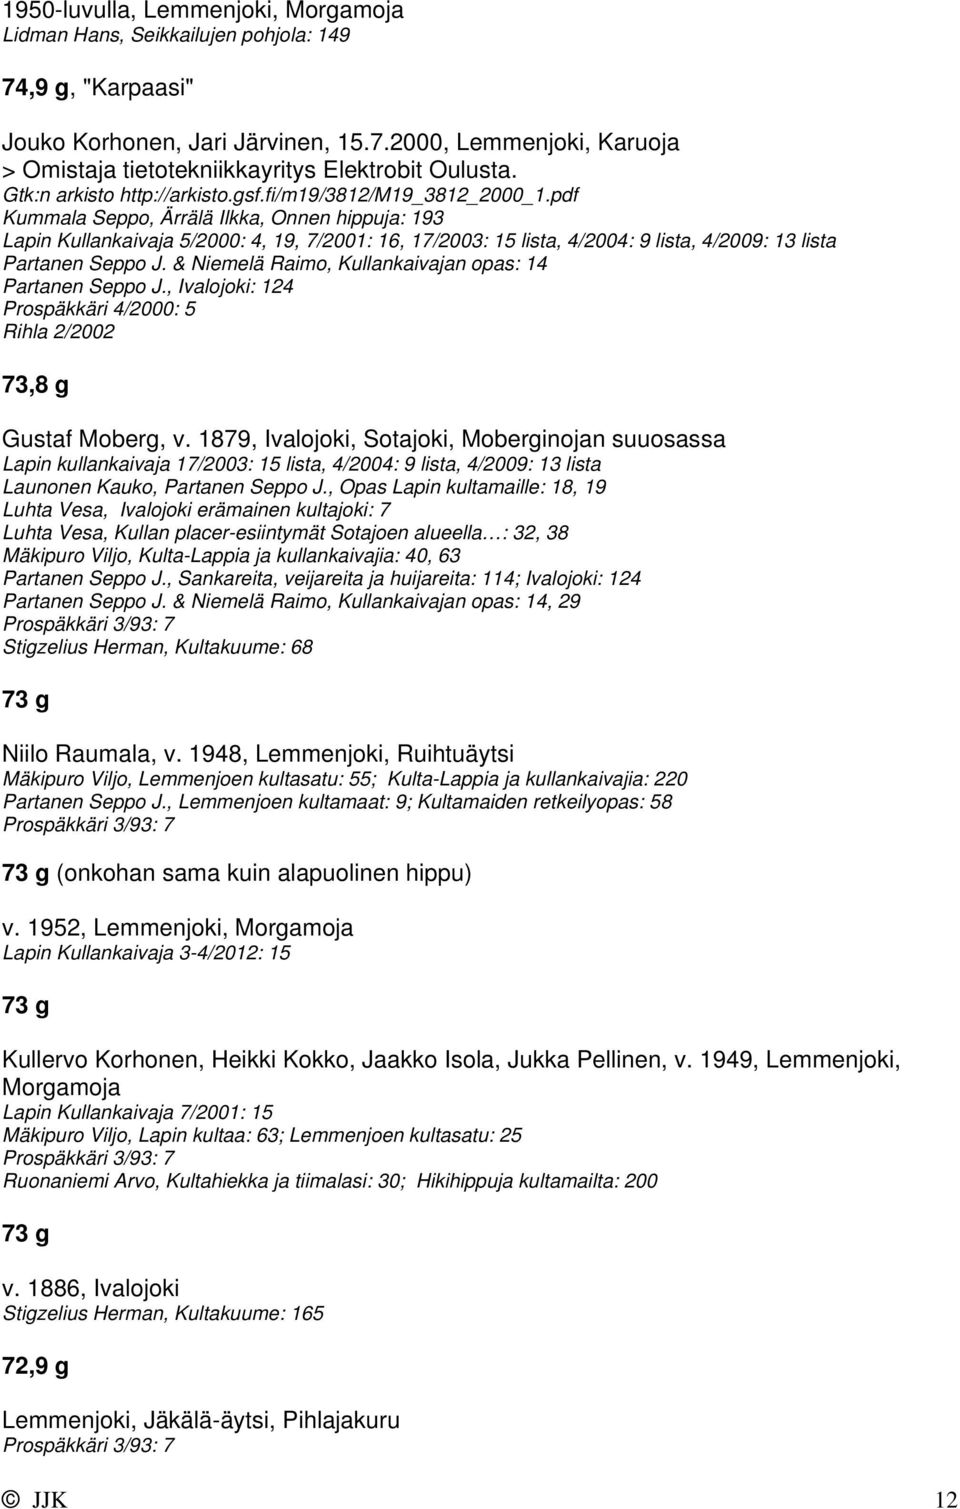 pdf Kummala Seppo, Ärrälä Ilkka, Onnen hippuja: 193 Lapin Kullankaivaja 5/2000: 4, 19, 7/2001: 16, 17/2003: 15 lista, 4/2004: 9 lista, 4/2009: 13 lista Partanen Seppo J.